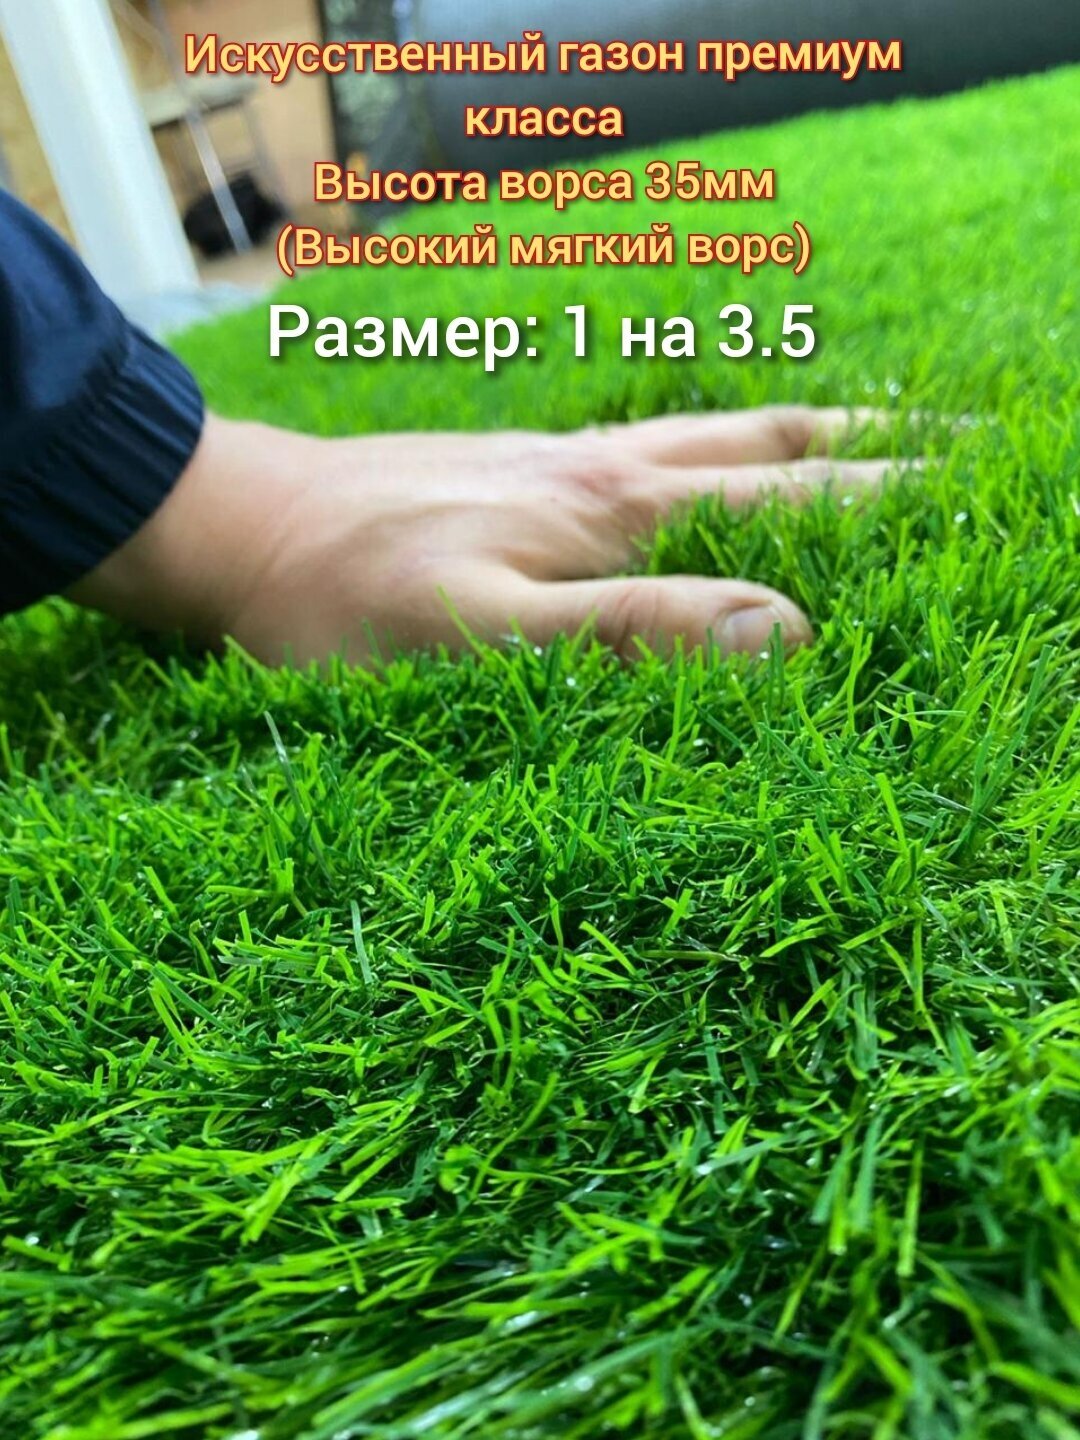 Газон искусственный 1 на 3.5 (высота ворса 35мм) искусственная трава с высоким мягким ворсом, имитация настоящего газона